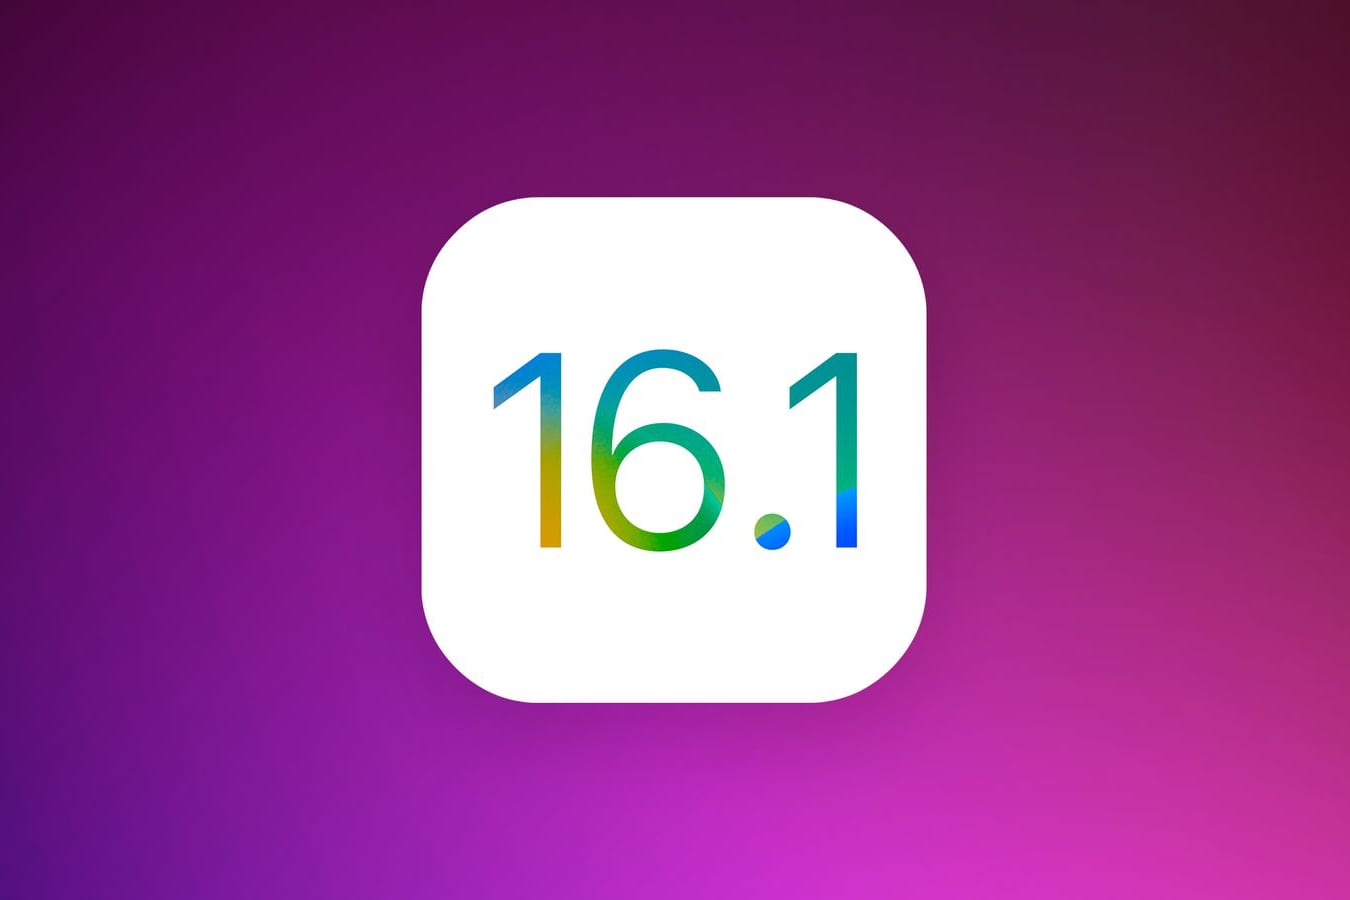 Apple перестала подписывать iOS 16.1 и iOS 16.1.1. Откатиться больше нельзя